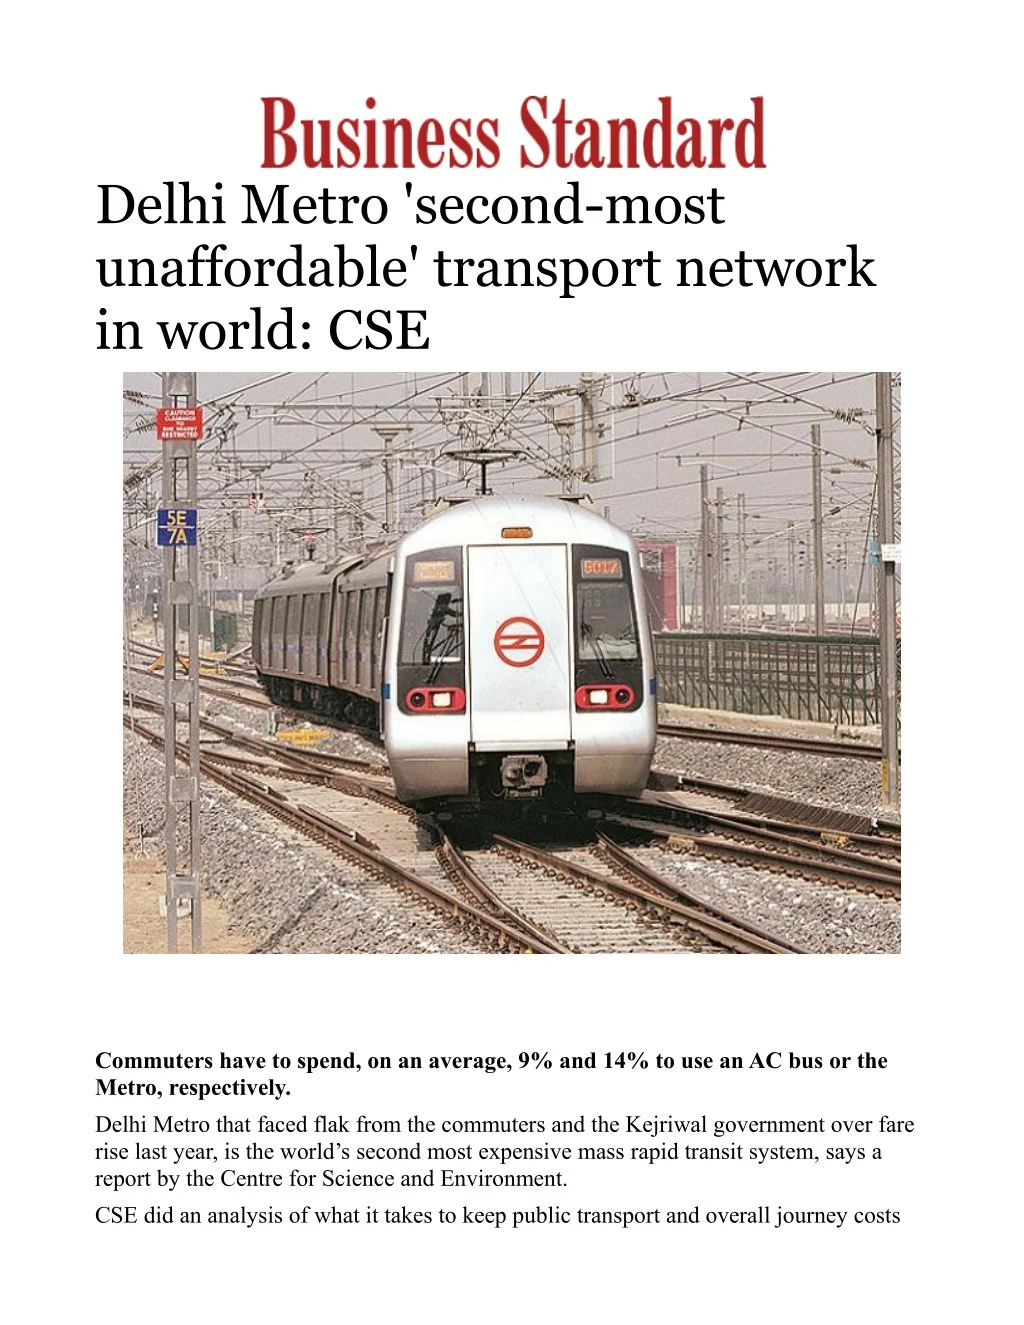 delhi metro second most unaffordable transport